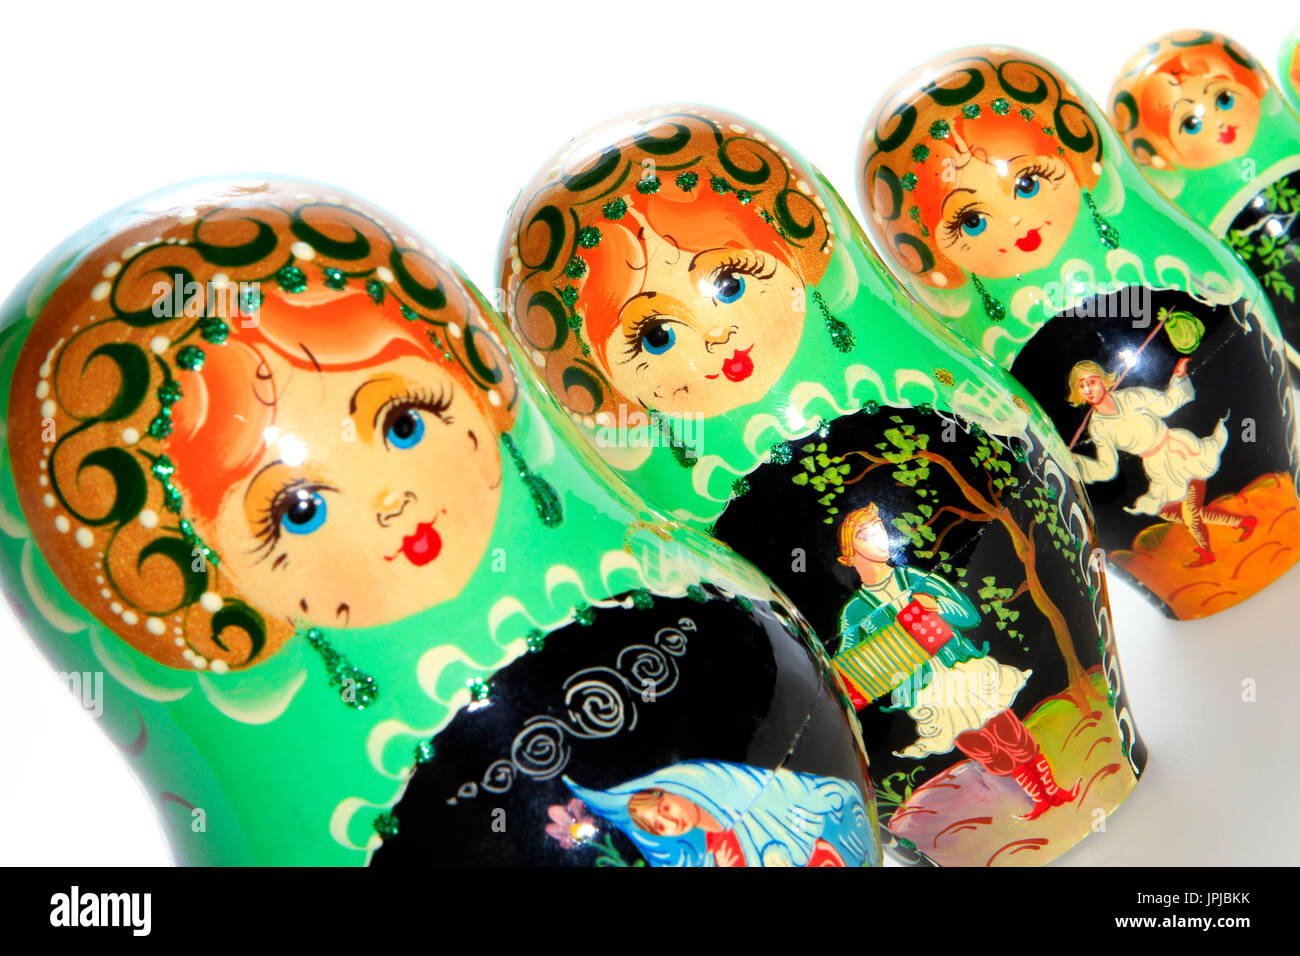 Poupées matriochka russe typique, souvenir de Russie Banque D'Images